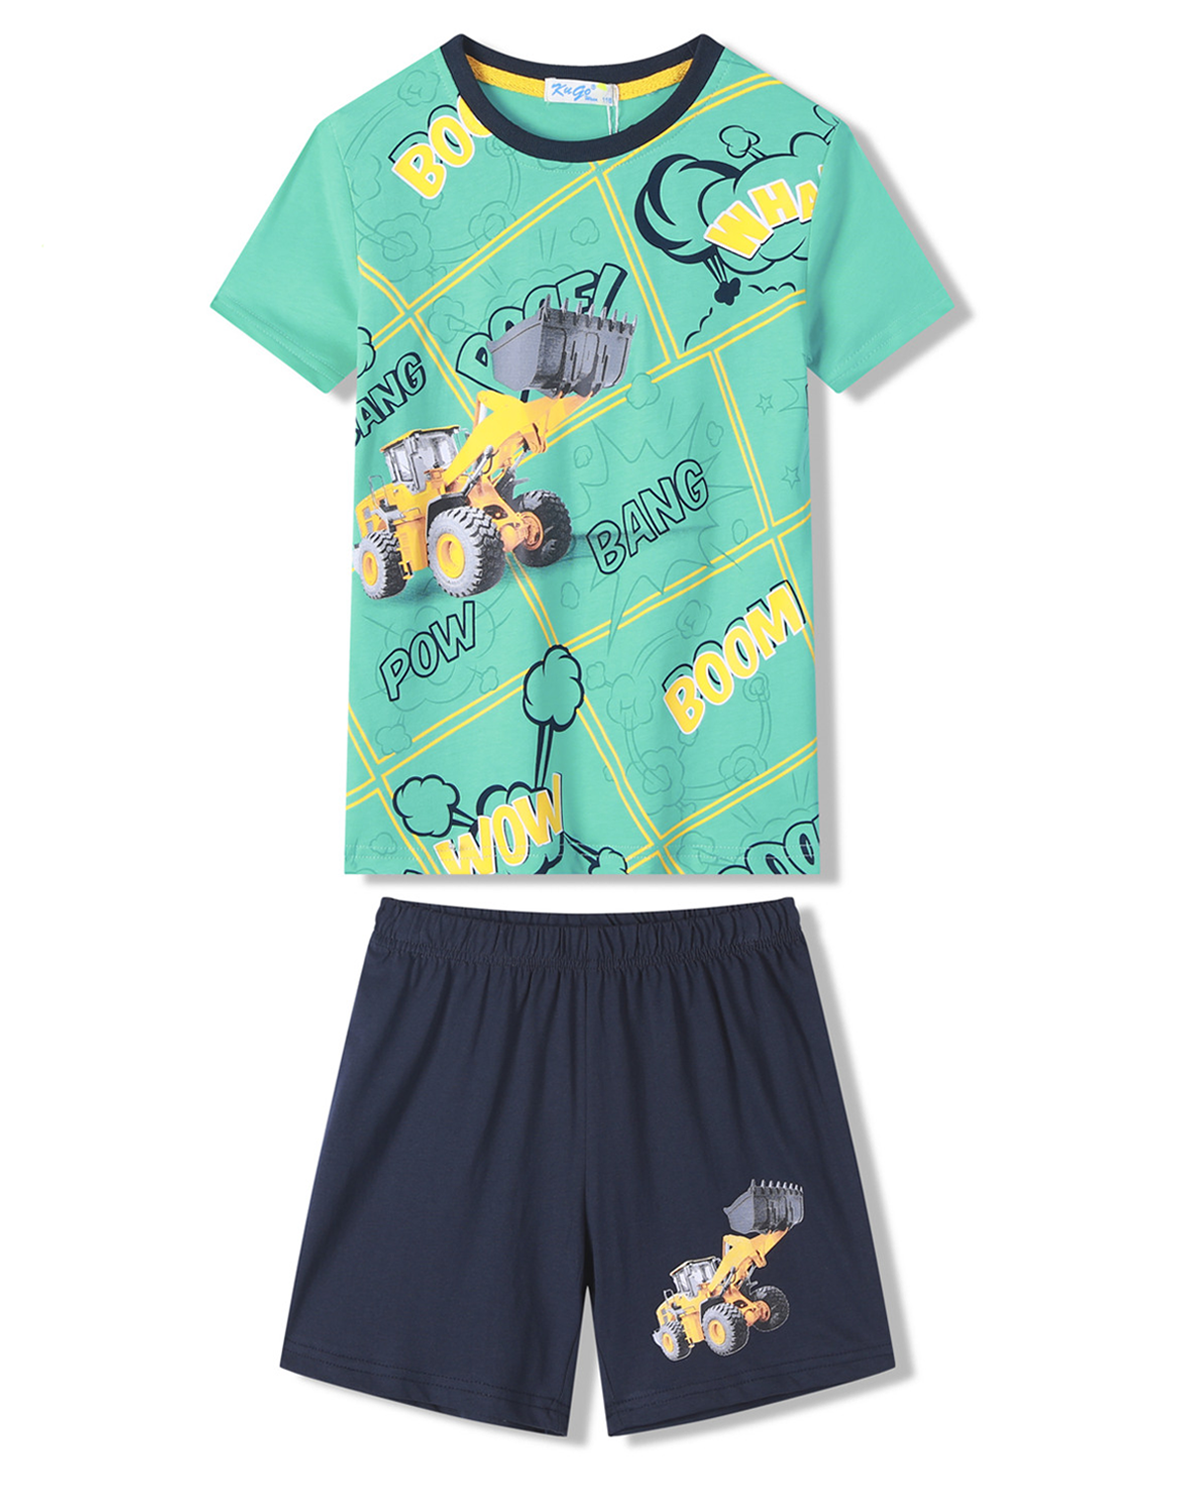 Chlapecké pyžamo - KUGO WT7310, zelinkavá Barva: Zelinkavá, Velikost: 128